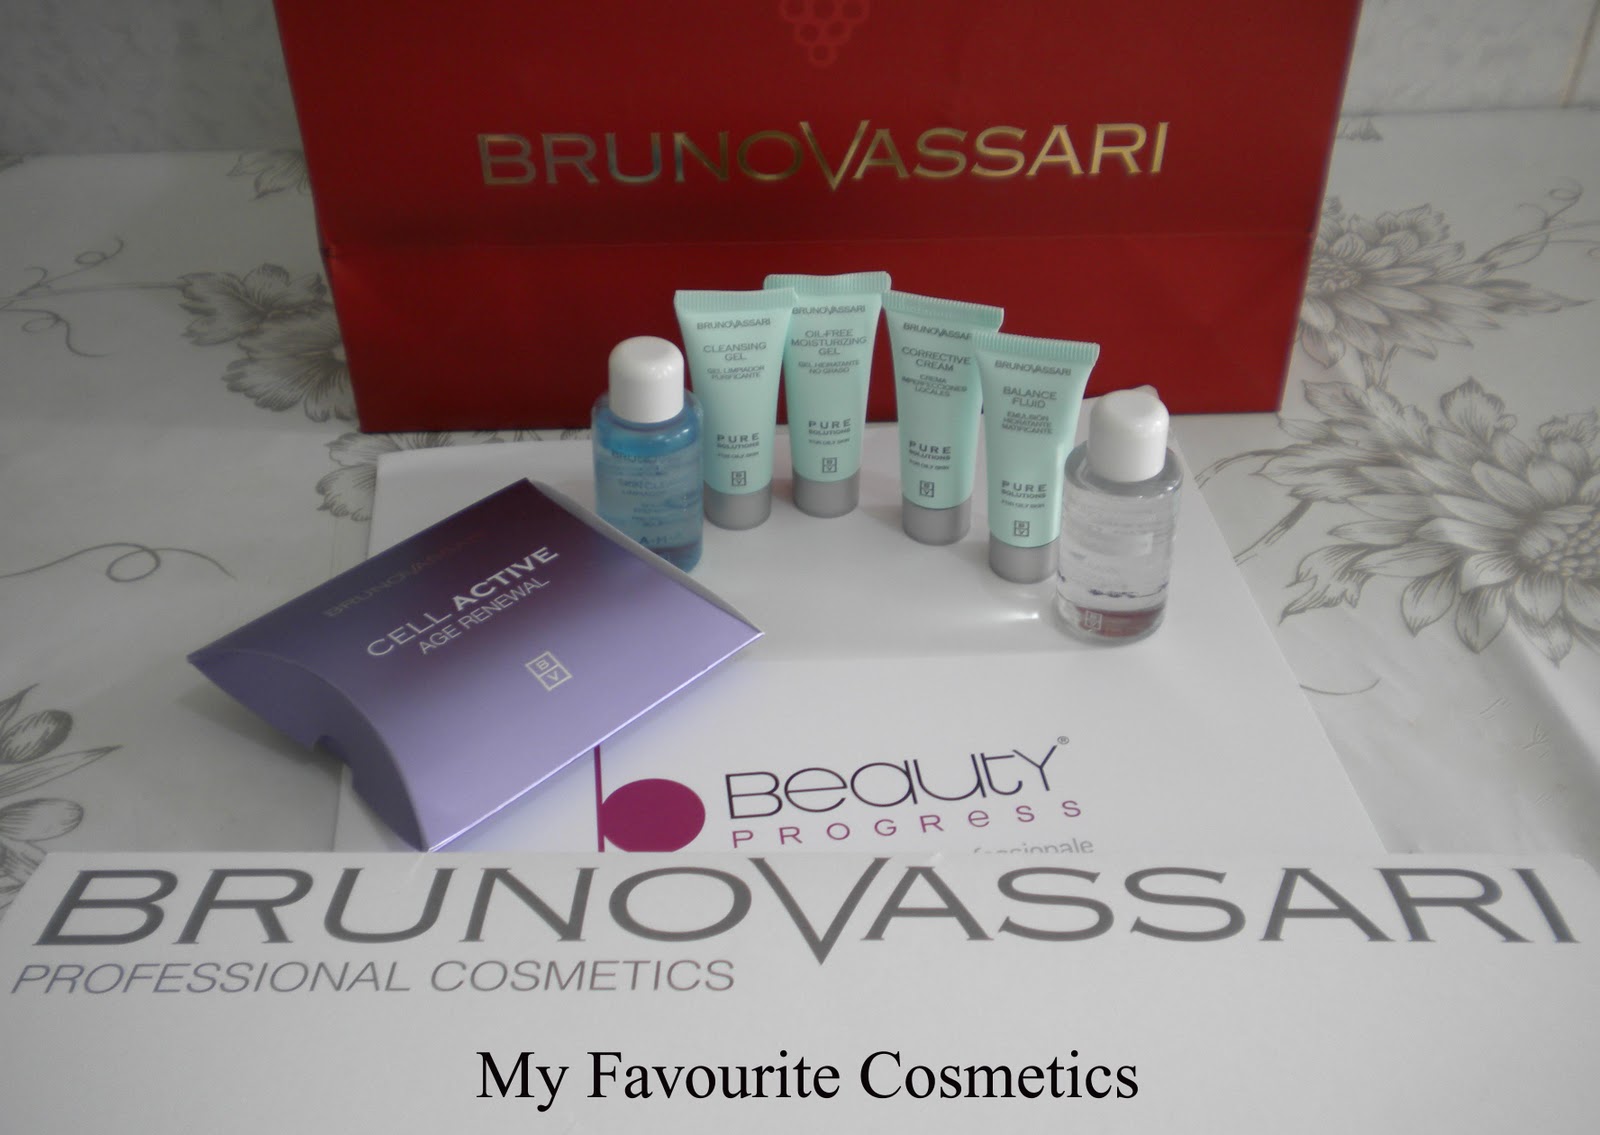 Bruno vassari professional cosmetics. - paperblog.